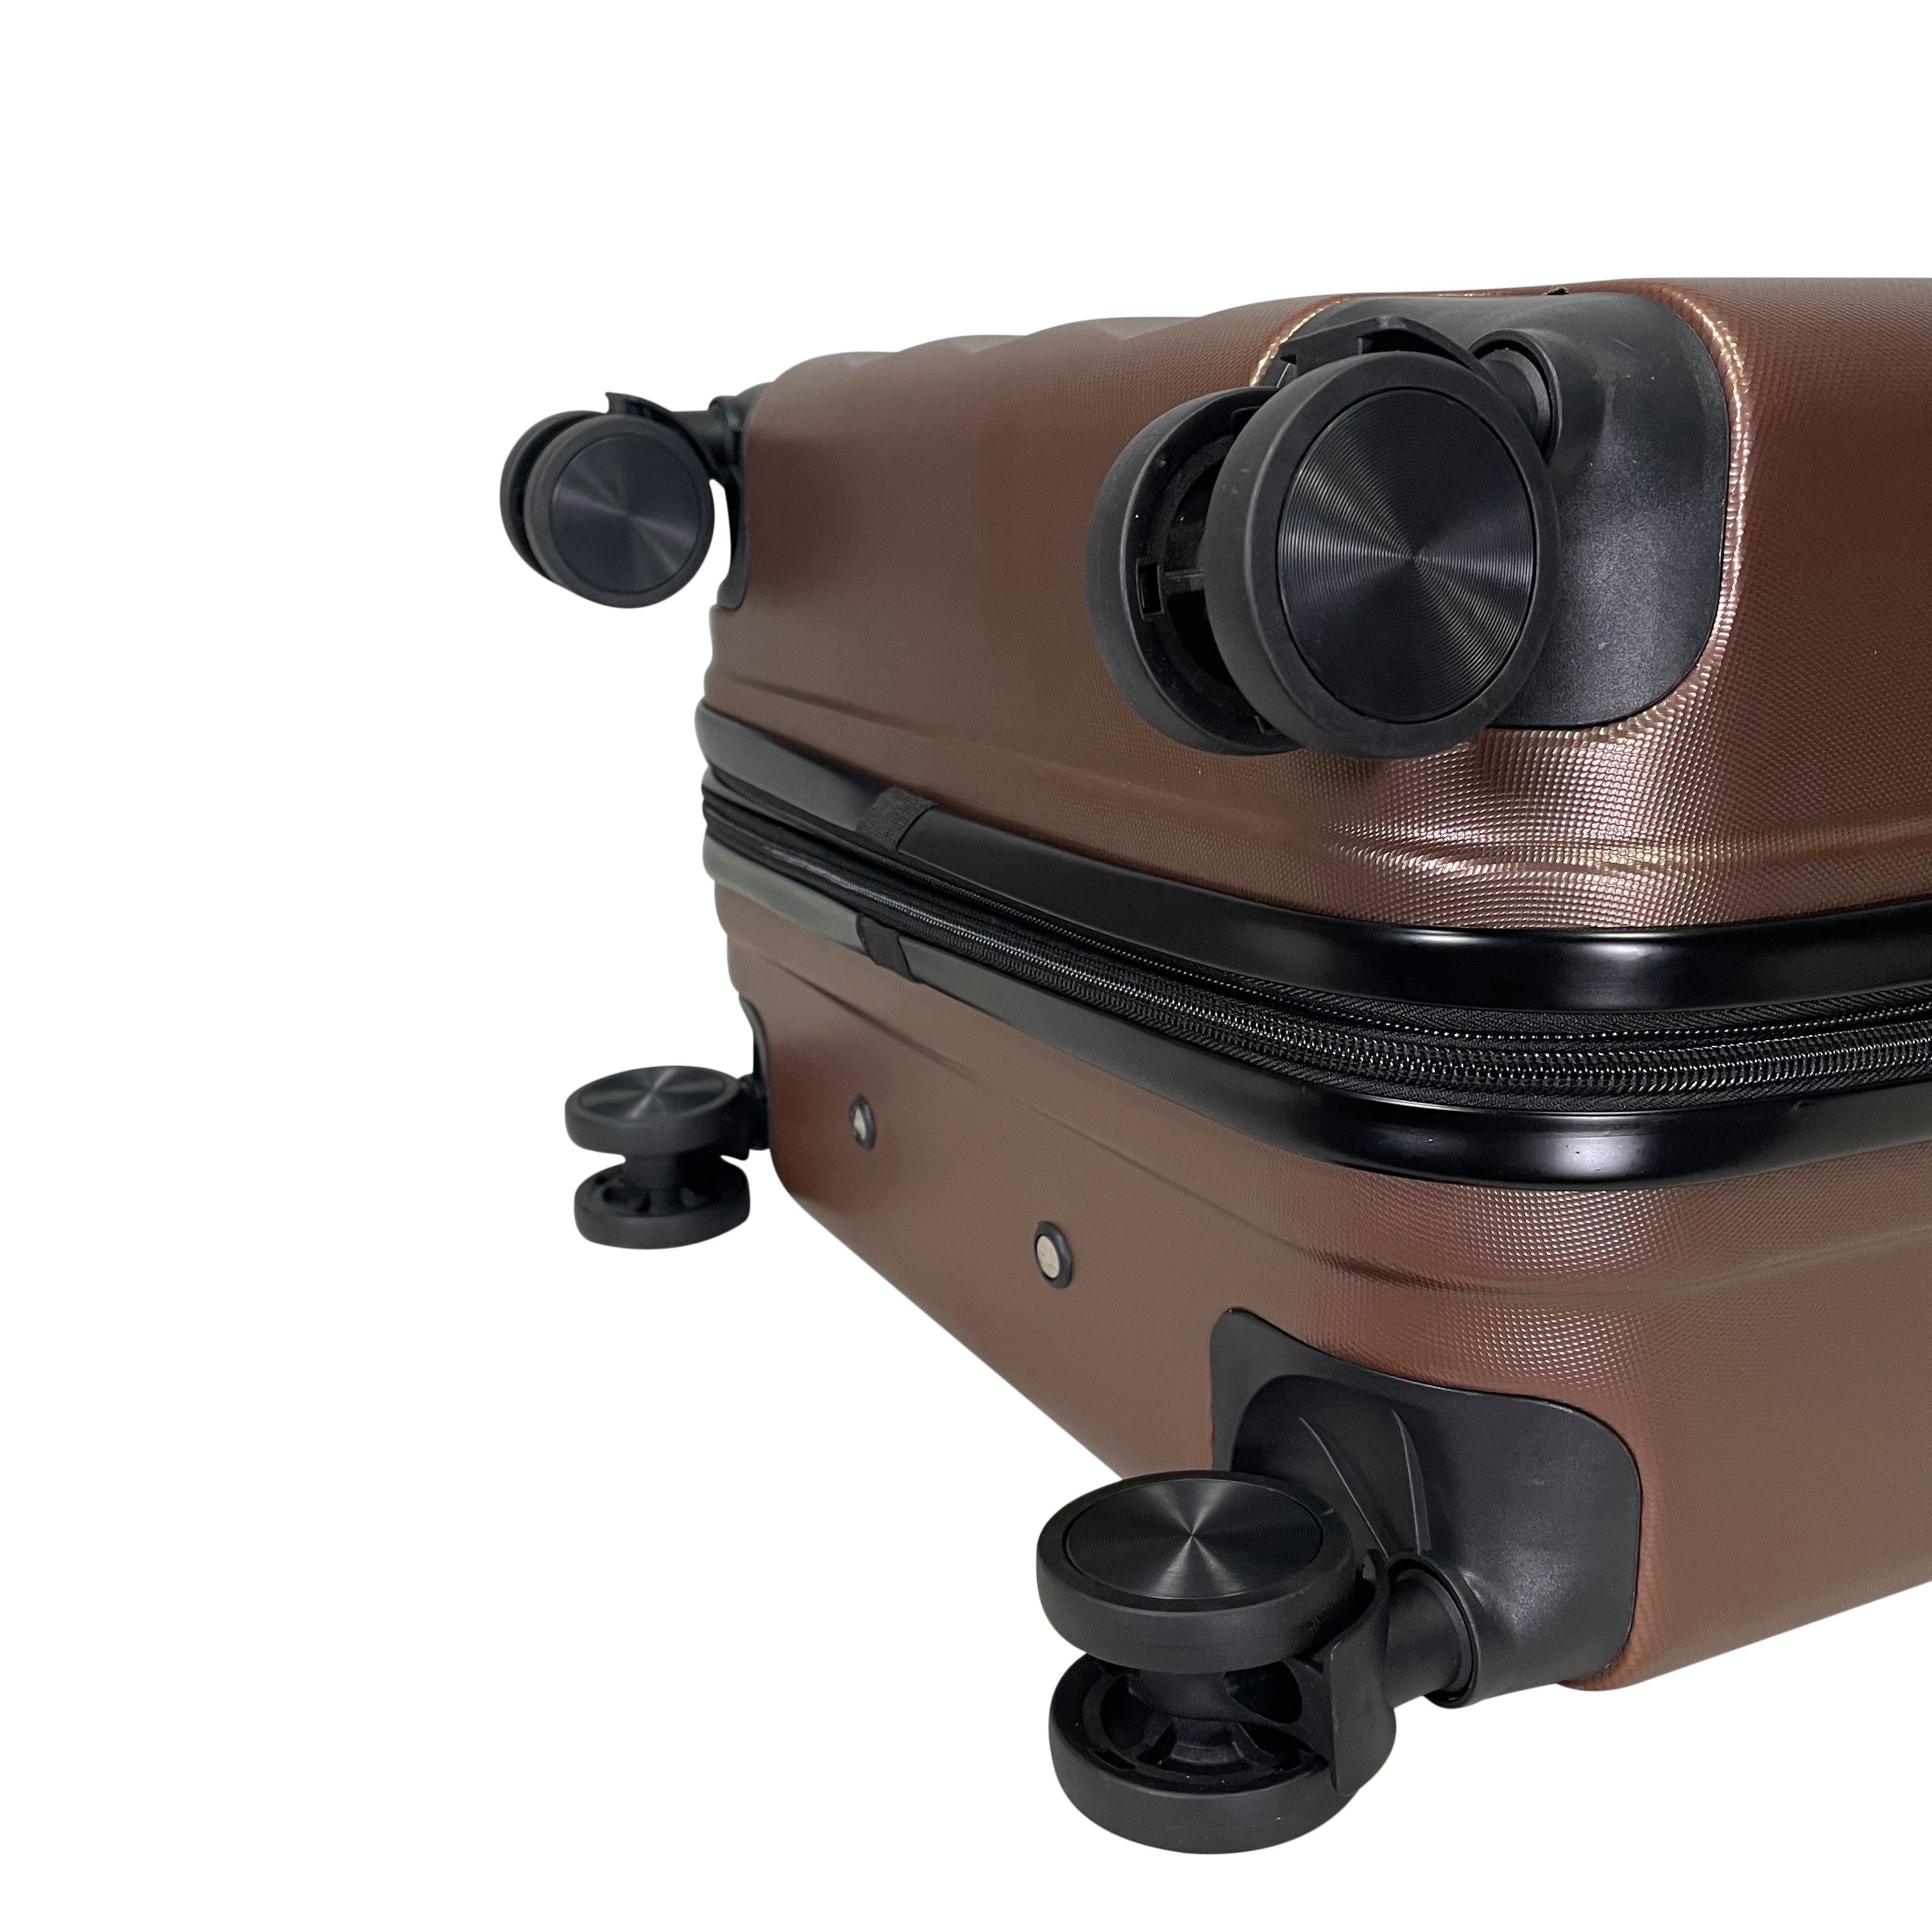 Koffer MTB (Handgepäck-Mittel-Groß-Set) Hartschalen Kaffee erweiterbar Reisekoffer ABS